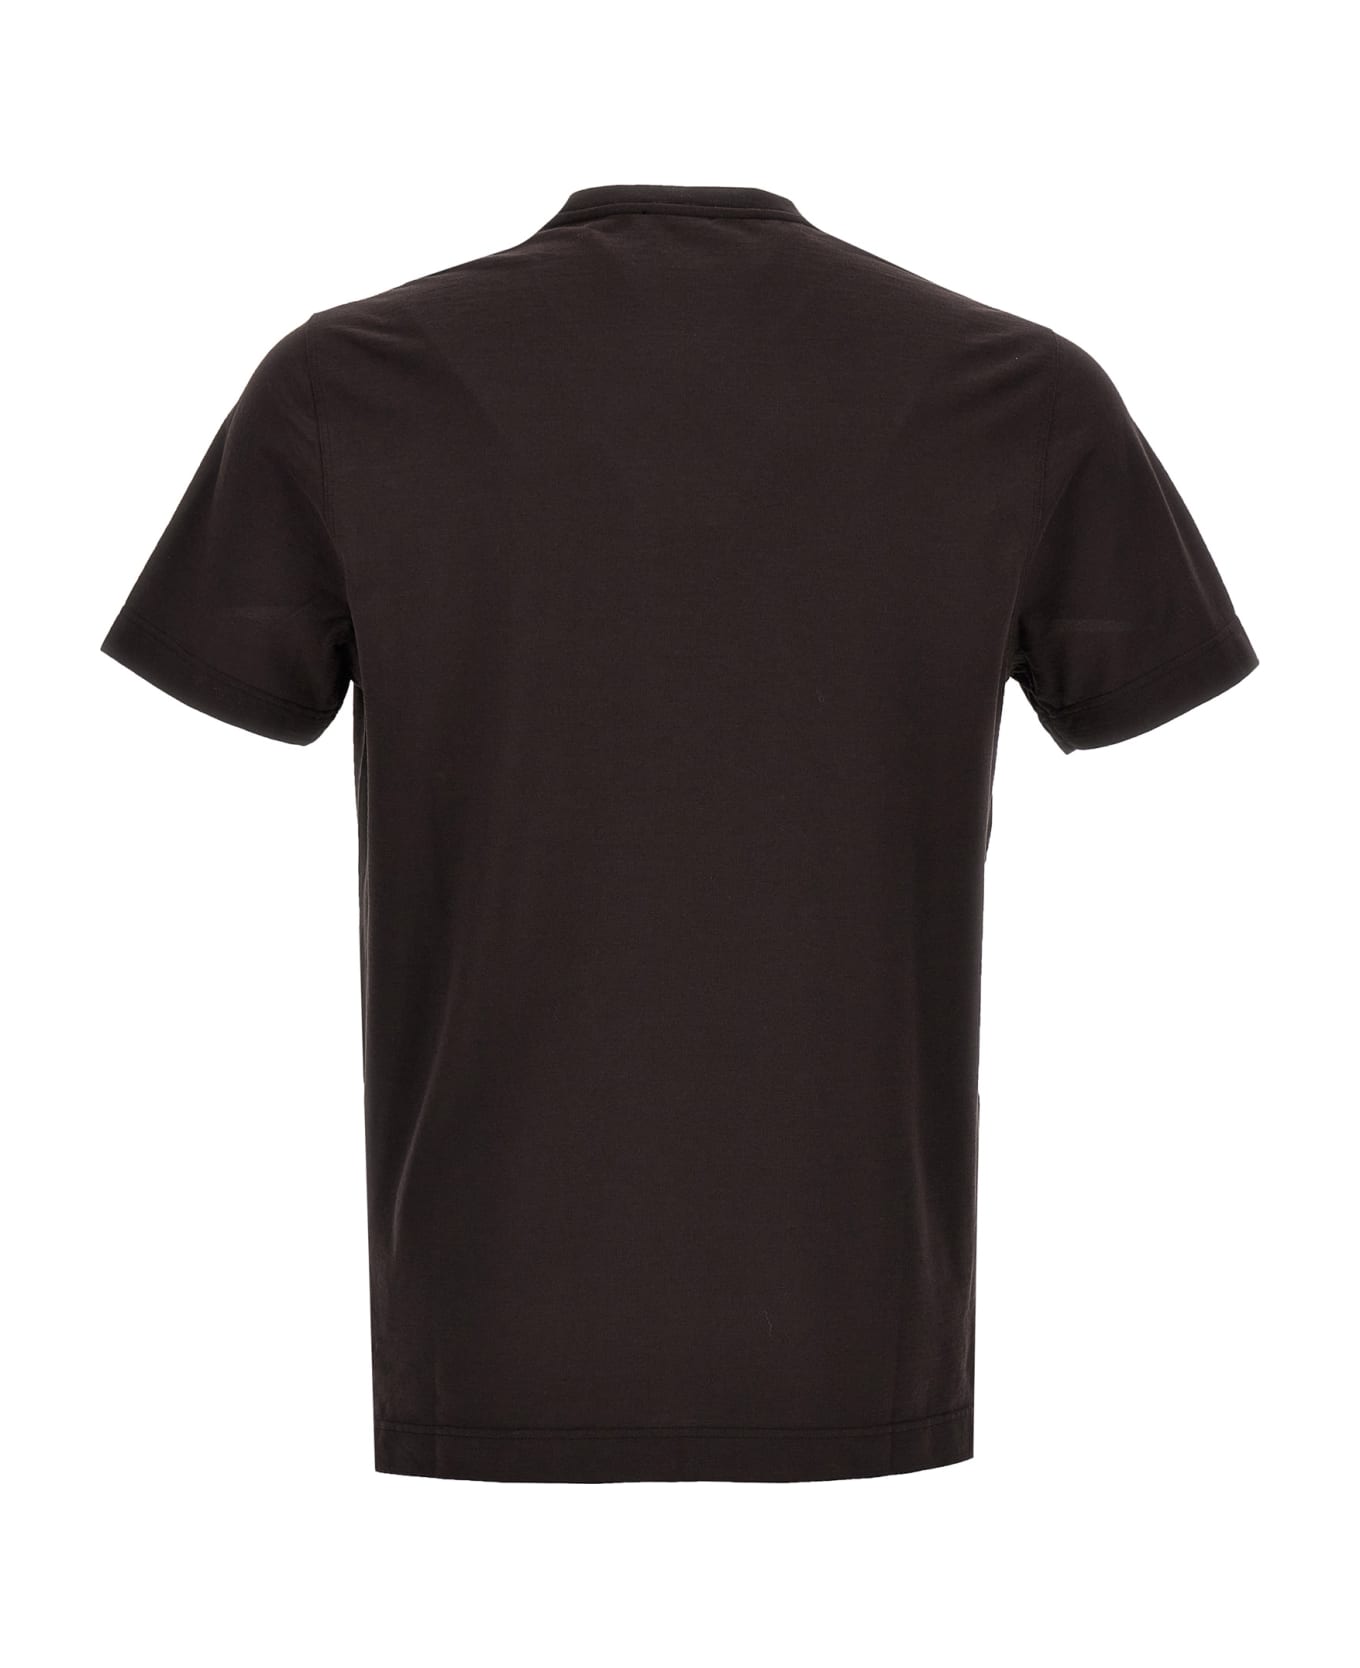 Zanone Ice Cotton T-shirt - Brown